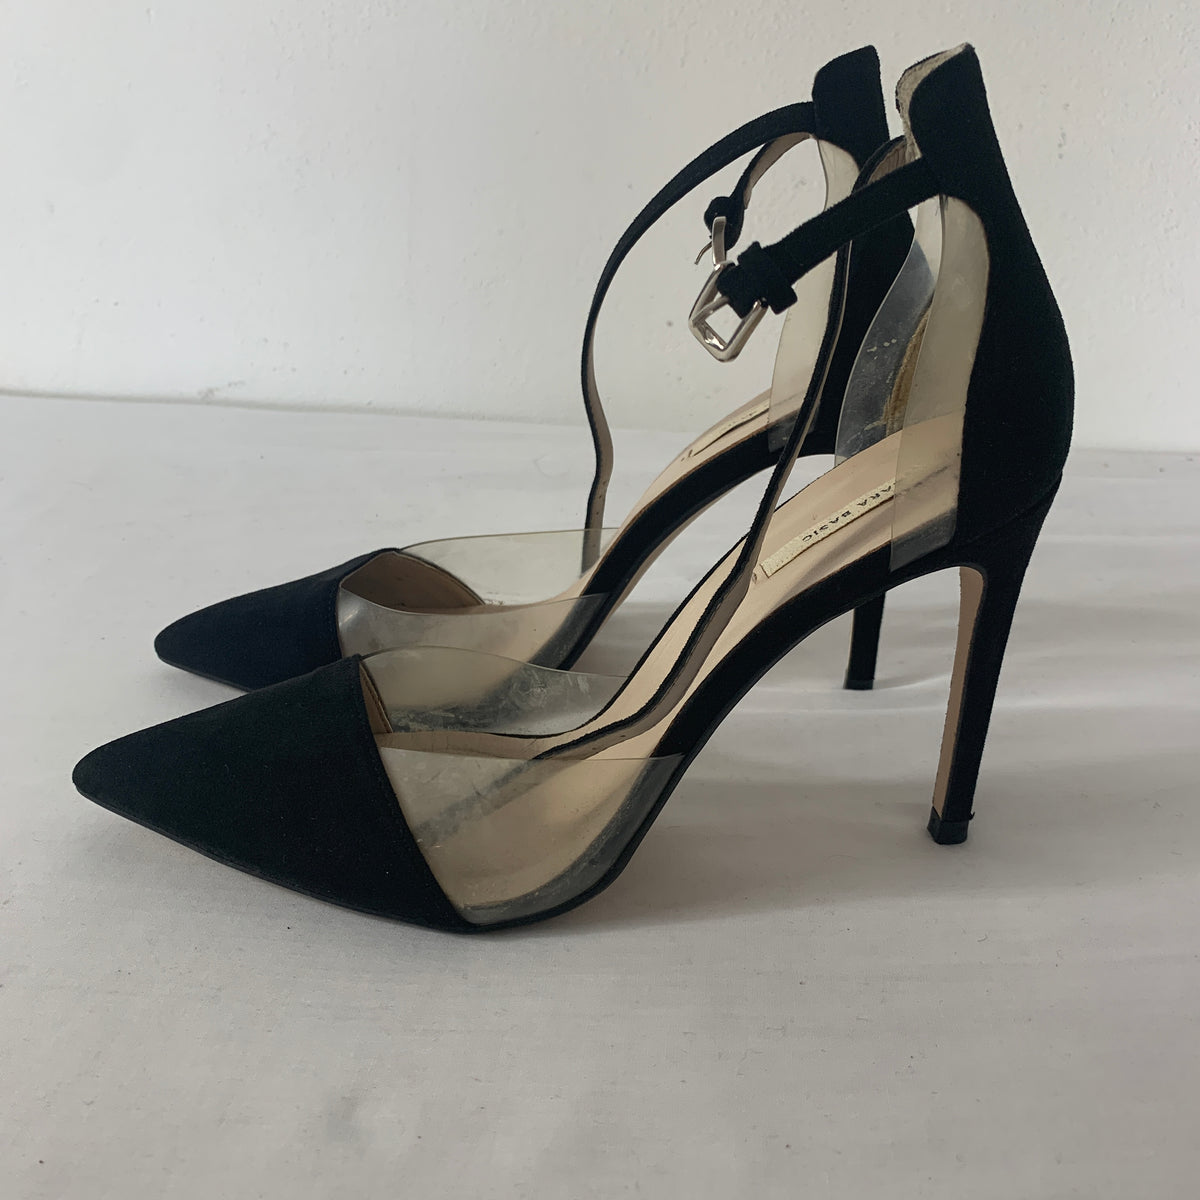 Zara heels | Zara heels, Heels, Zara